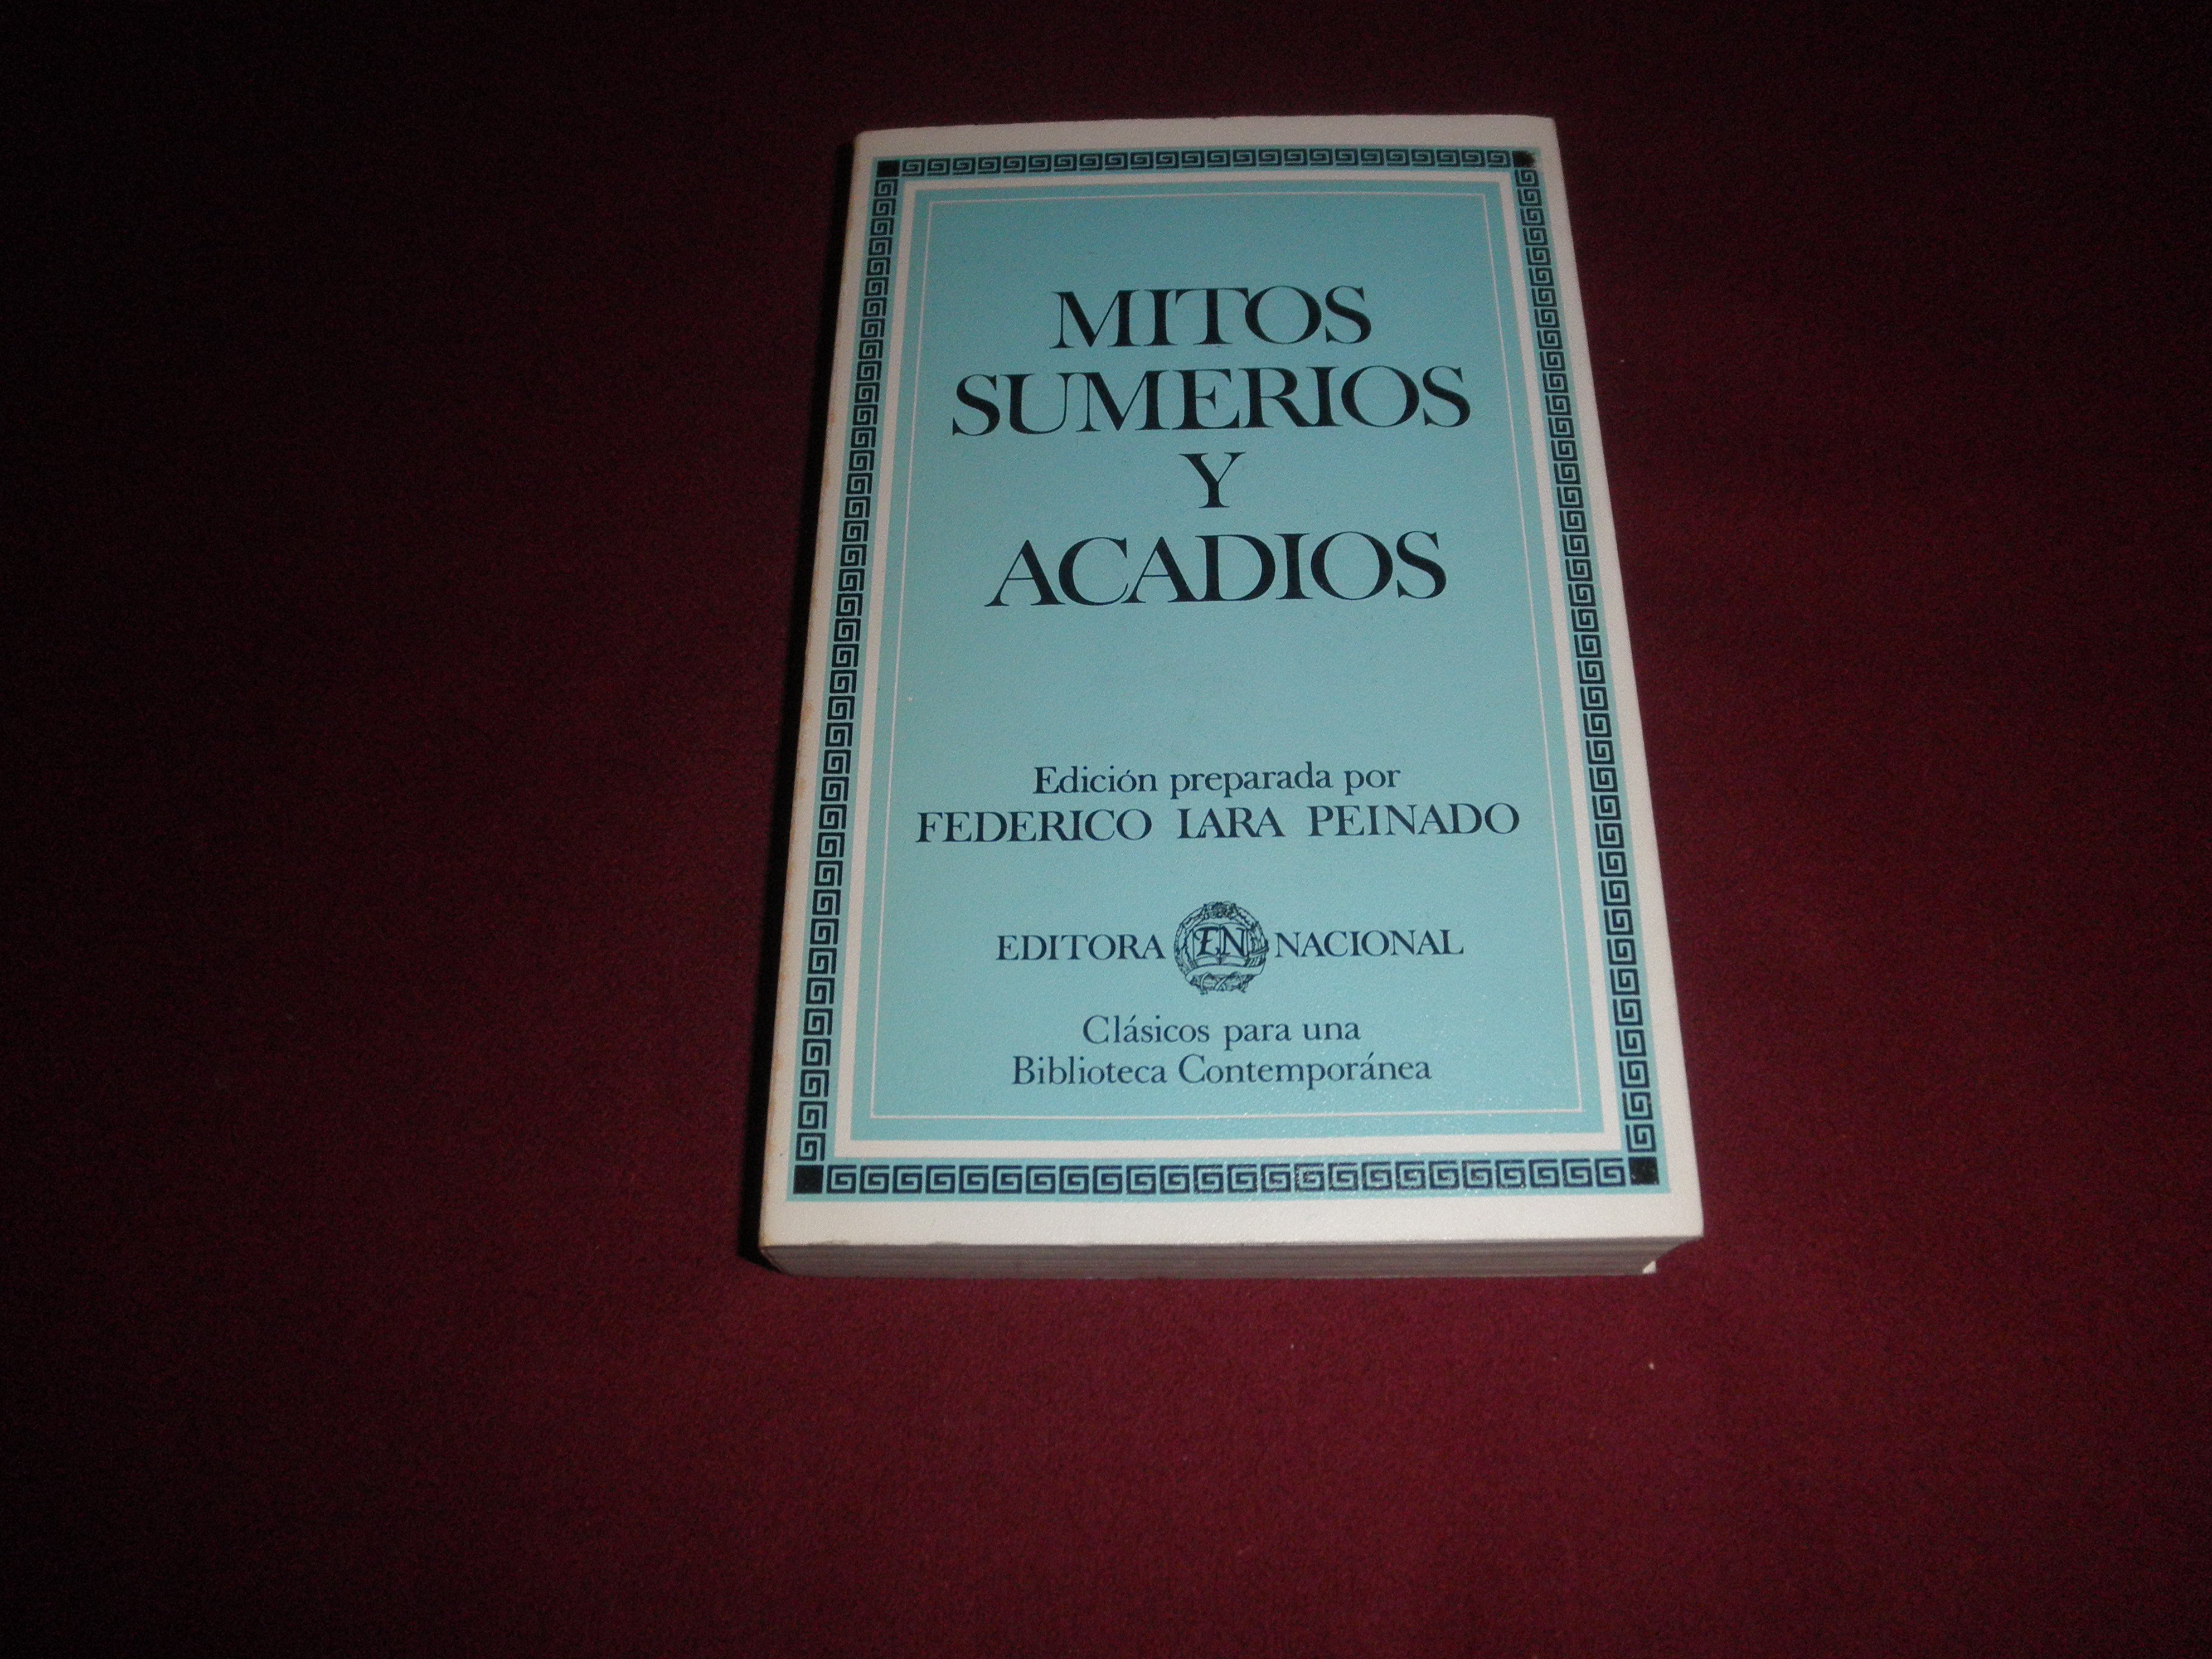 Mitos sumerios y acadios. Edicion preparada por Federico Lara Peinado by Federico  Lara Peinado: (1984) | LIBRERIA ANTICUARIA EPOPEYA